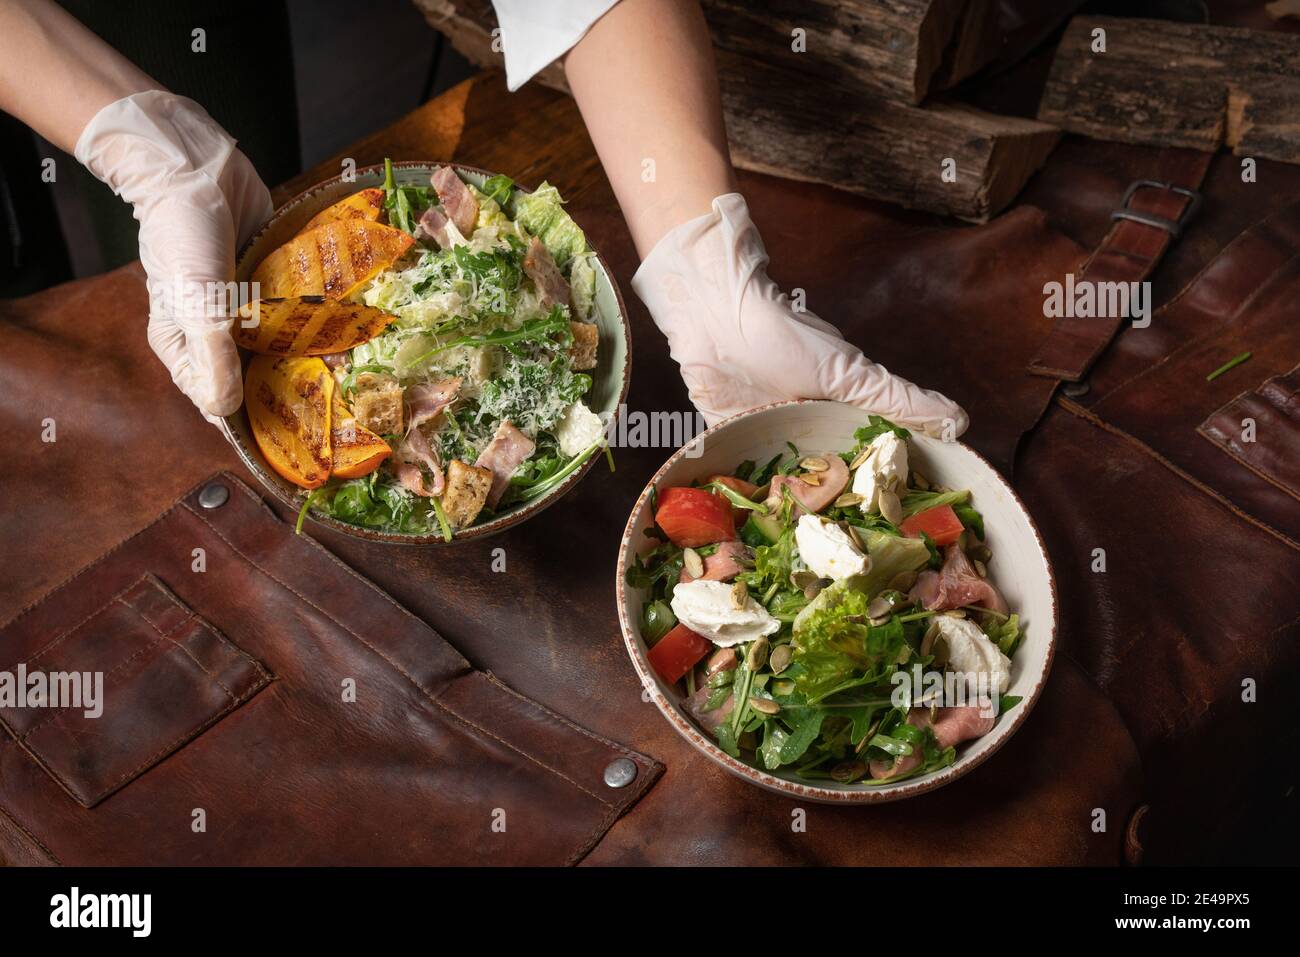 Deux mains avec des bols de salade de légumes avec du saumon, du fromage mozzarella et des tranches de fruits grillées se dressent sur une table recouverte d'un chiffon en cuir Banque D'Images